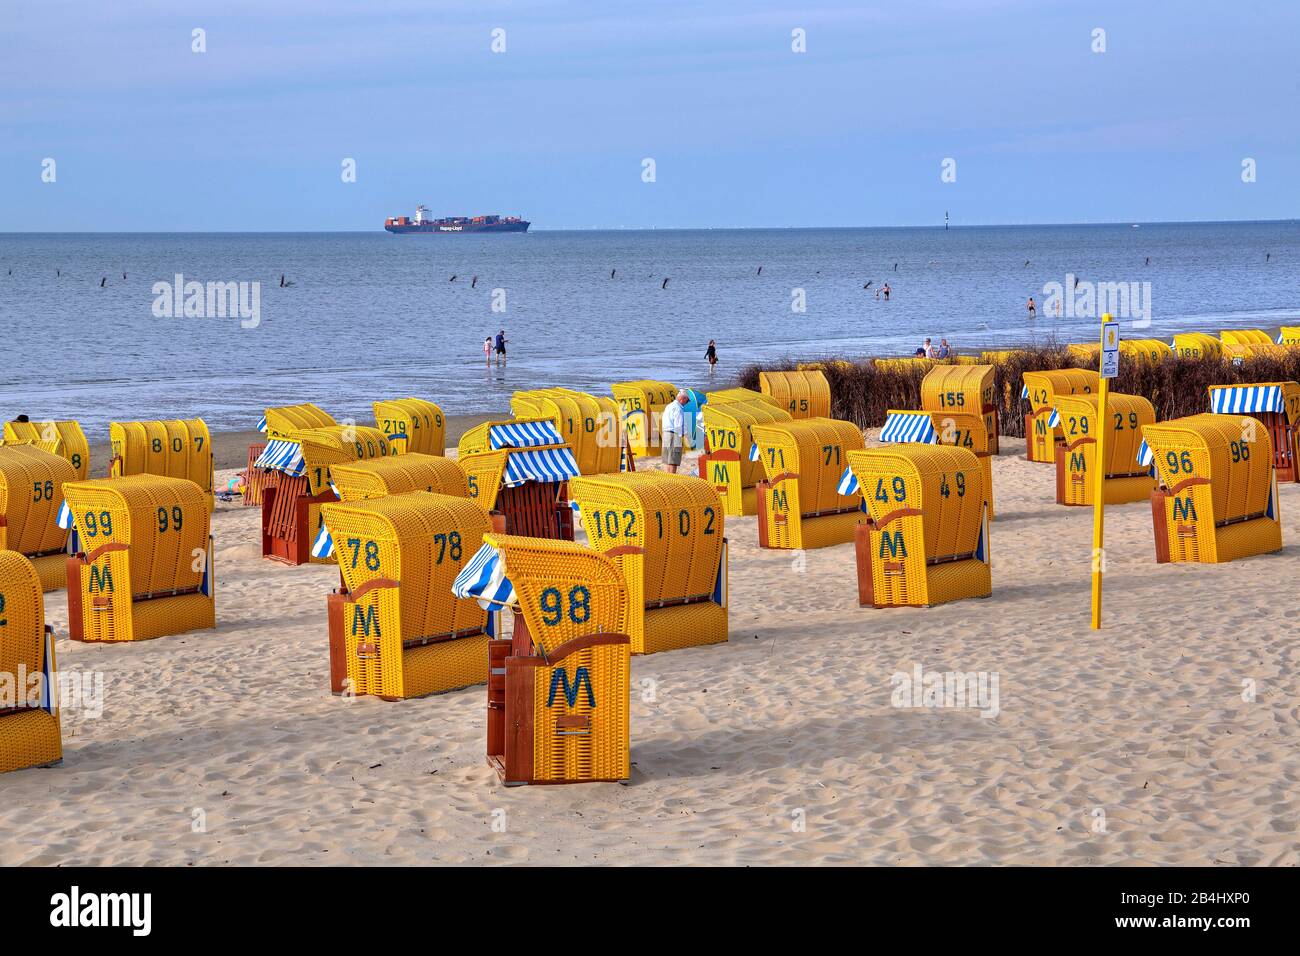 Plage avec chaises de plage dans le quartier Duhnen, station de la mer du Nord Cuxhaven, estuaire d'Elbe, mer du Nord, côte de la mer du Nord, Basse-Saxe, Allemagne Banque D'Images